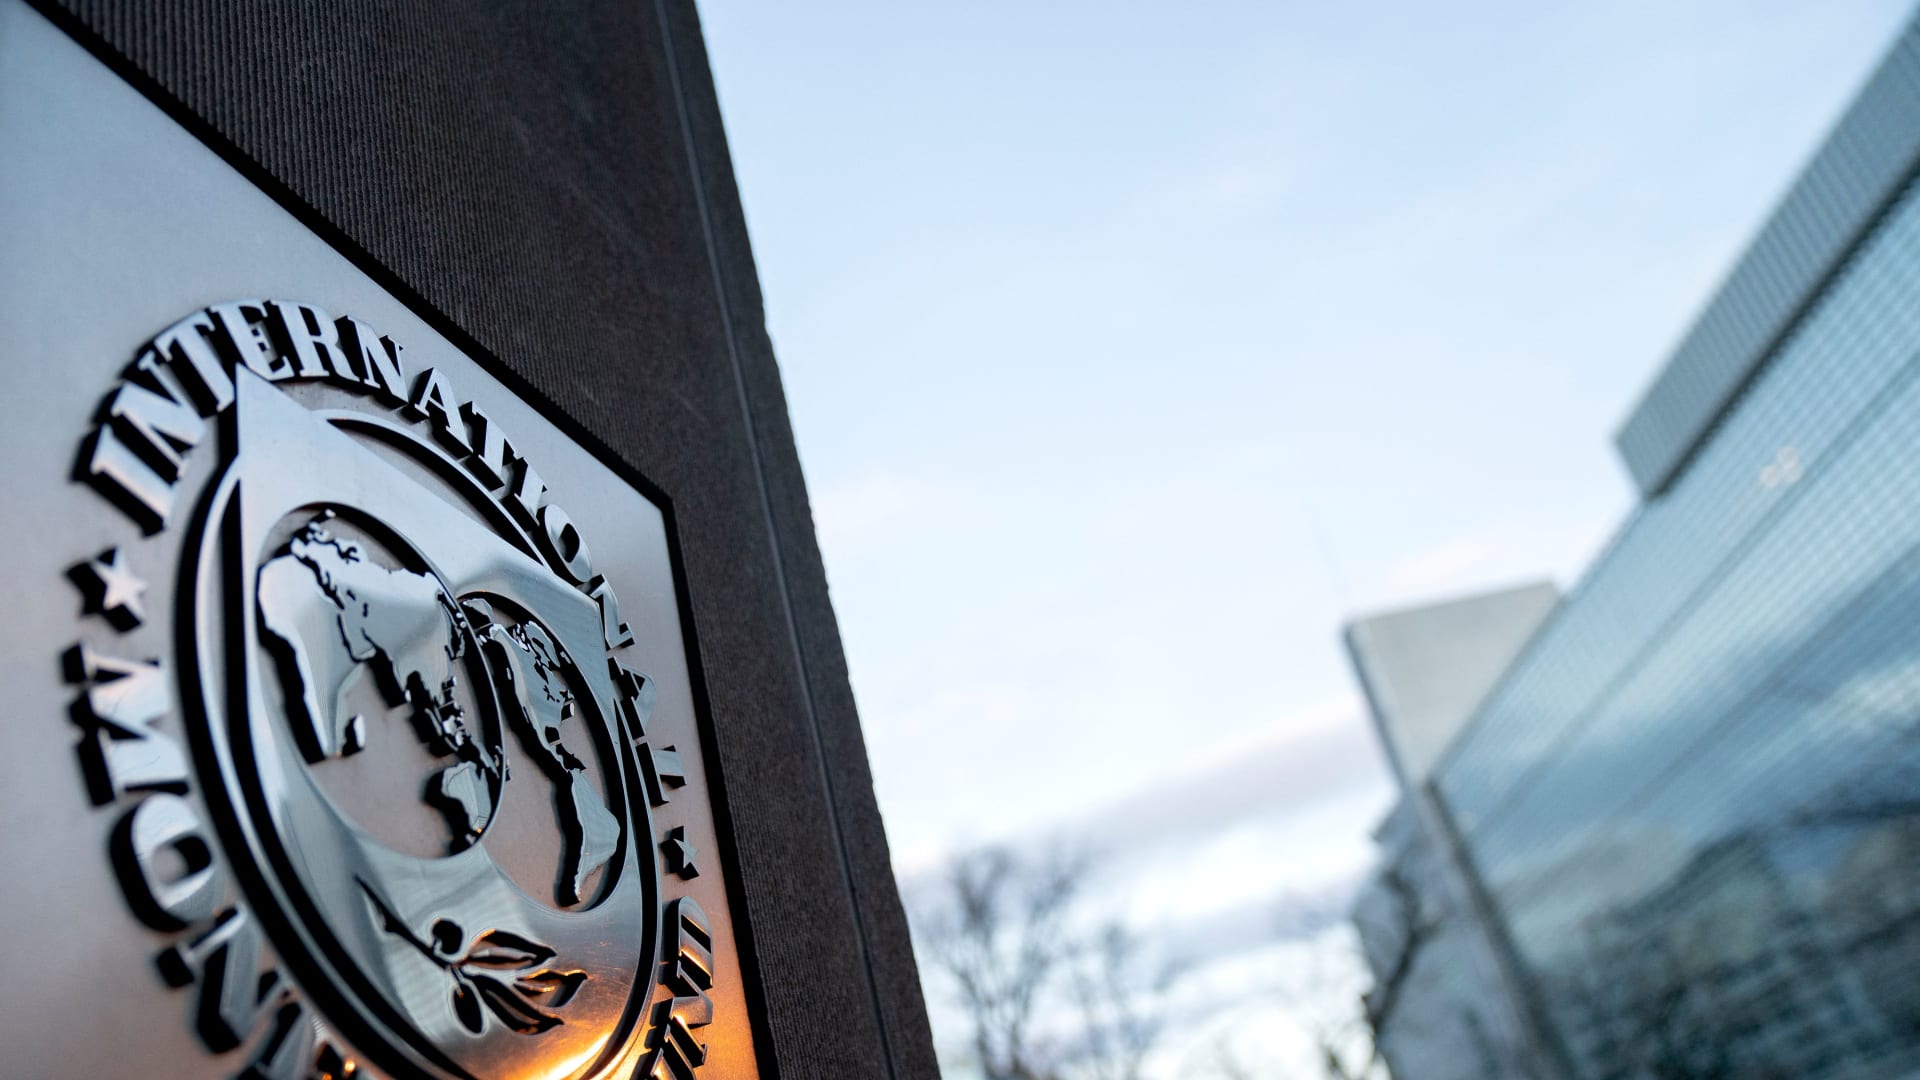 البنك الدولي يحذر من مخاطر ارتفاع التضخم والركود الاقتصادي.. ويخفض توقعاته للنمو العالمي